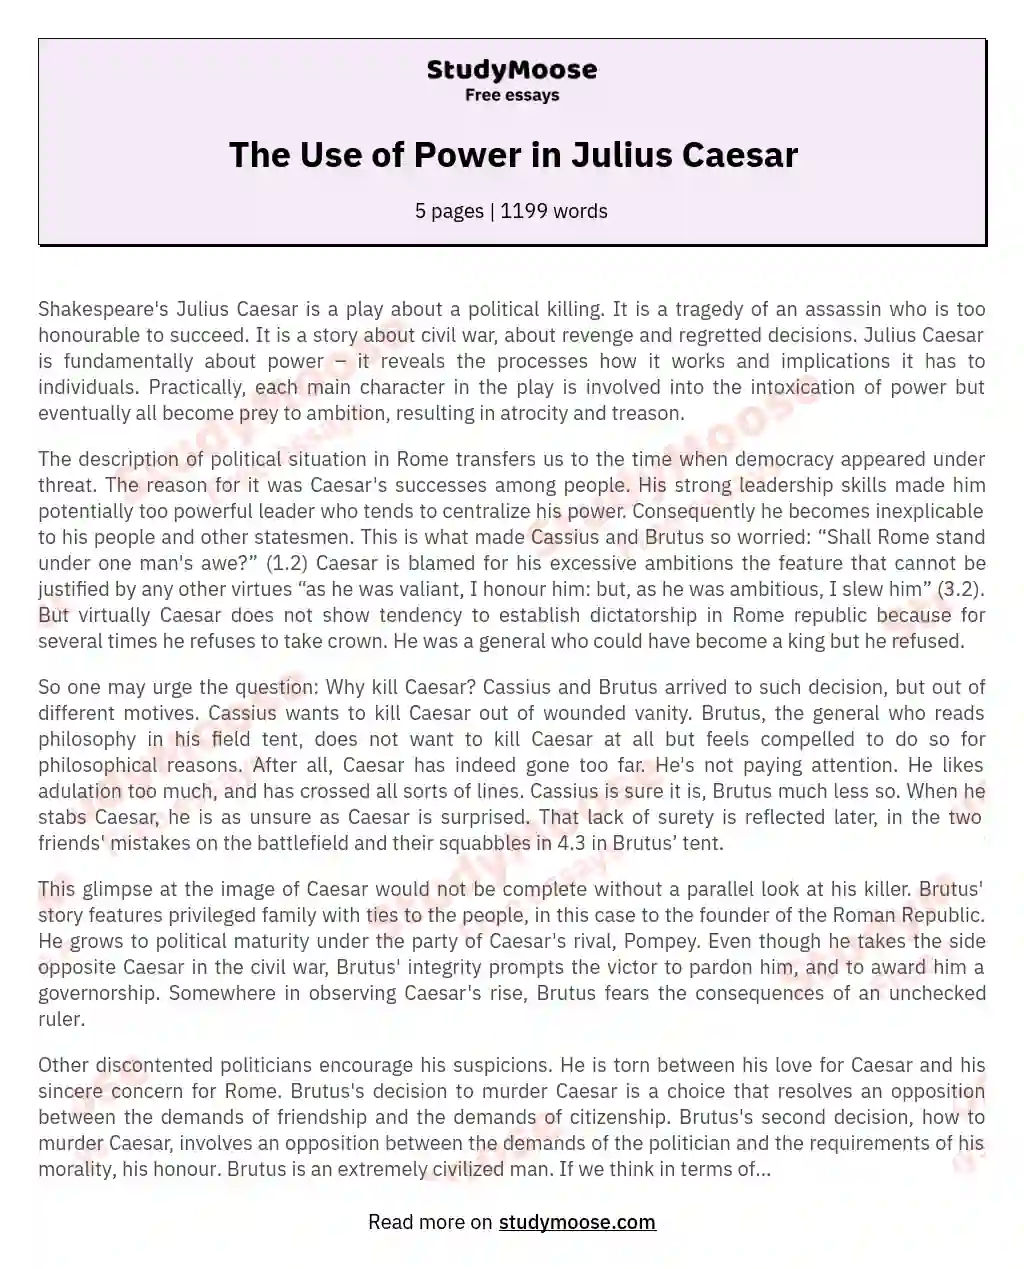 The Use of Power in Julius Caesar essay